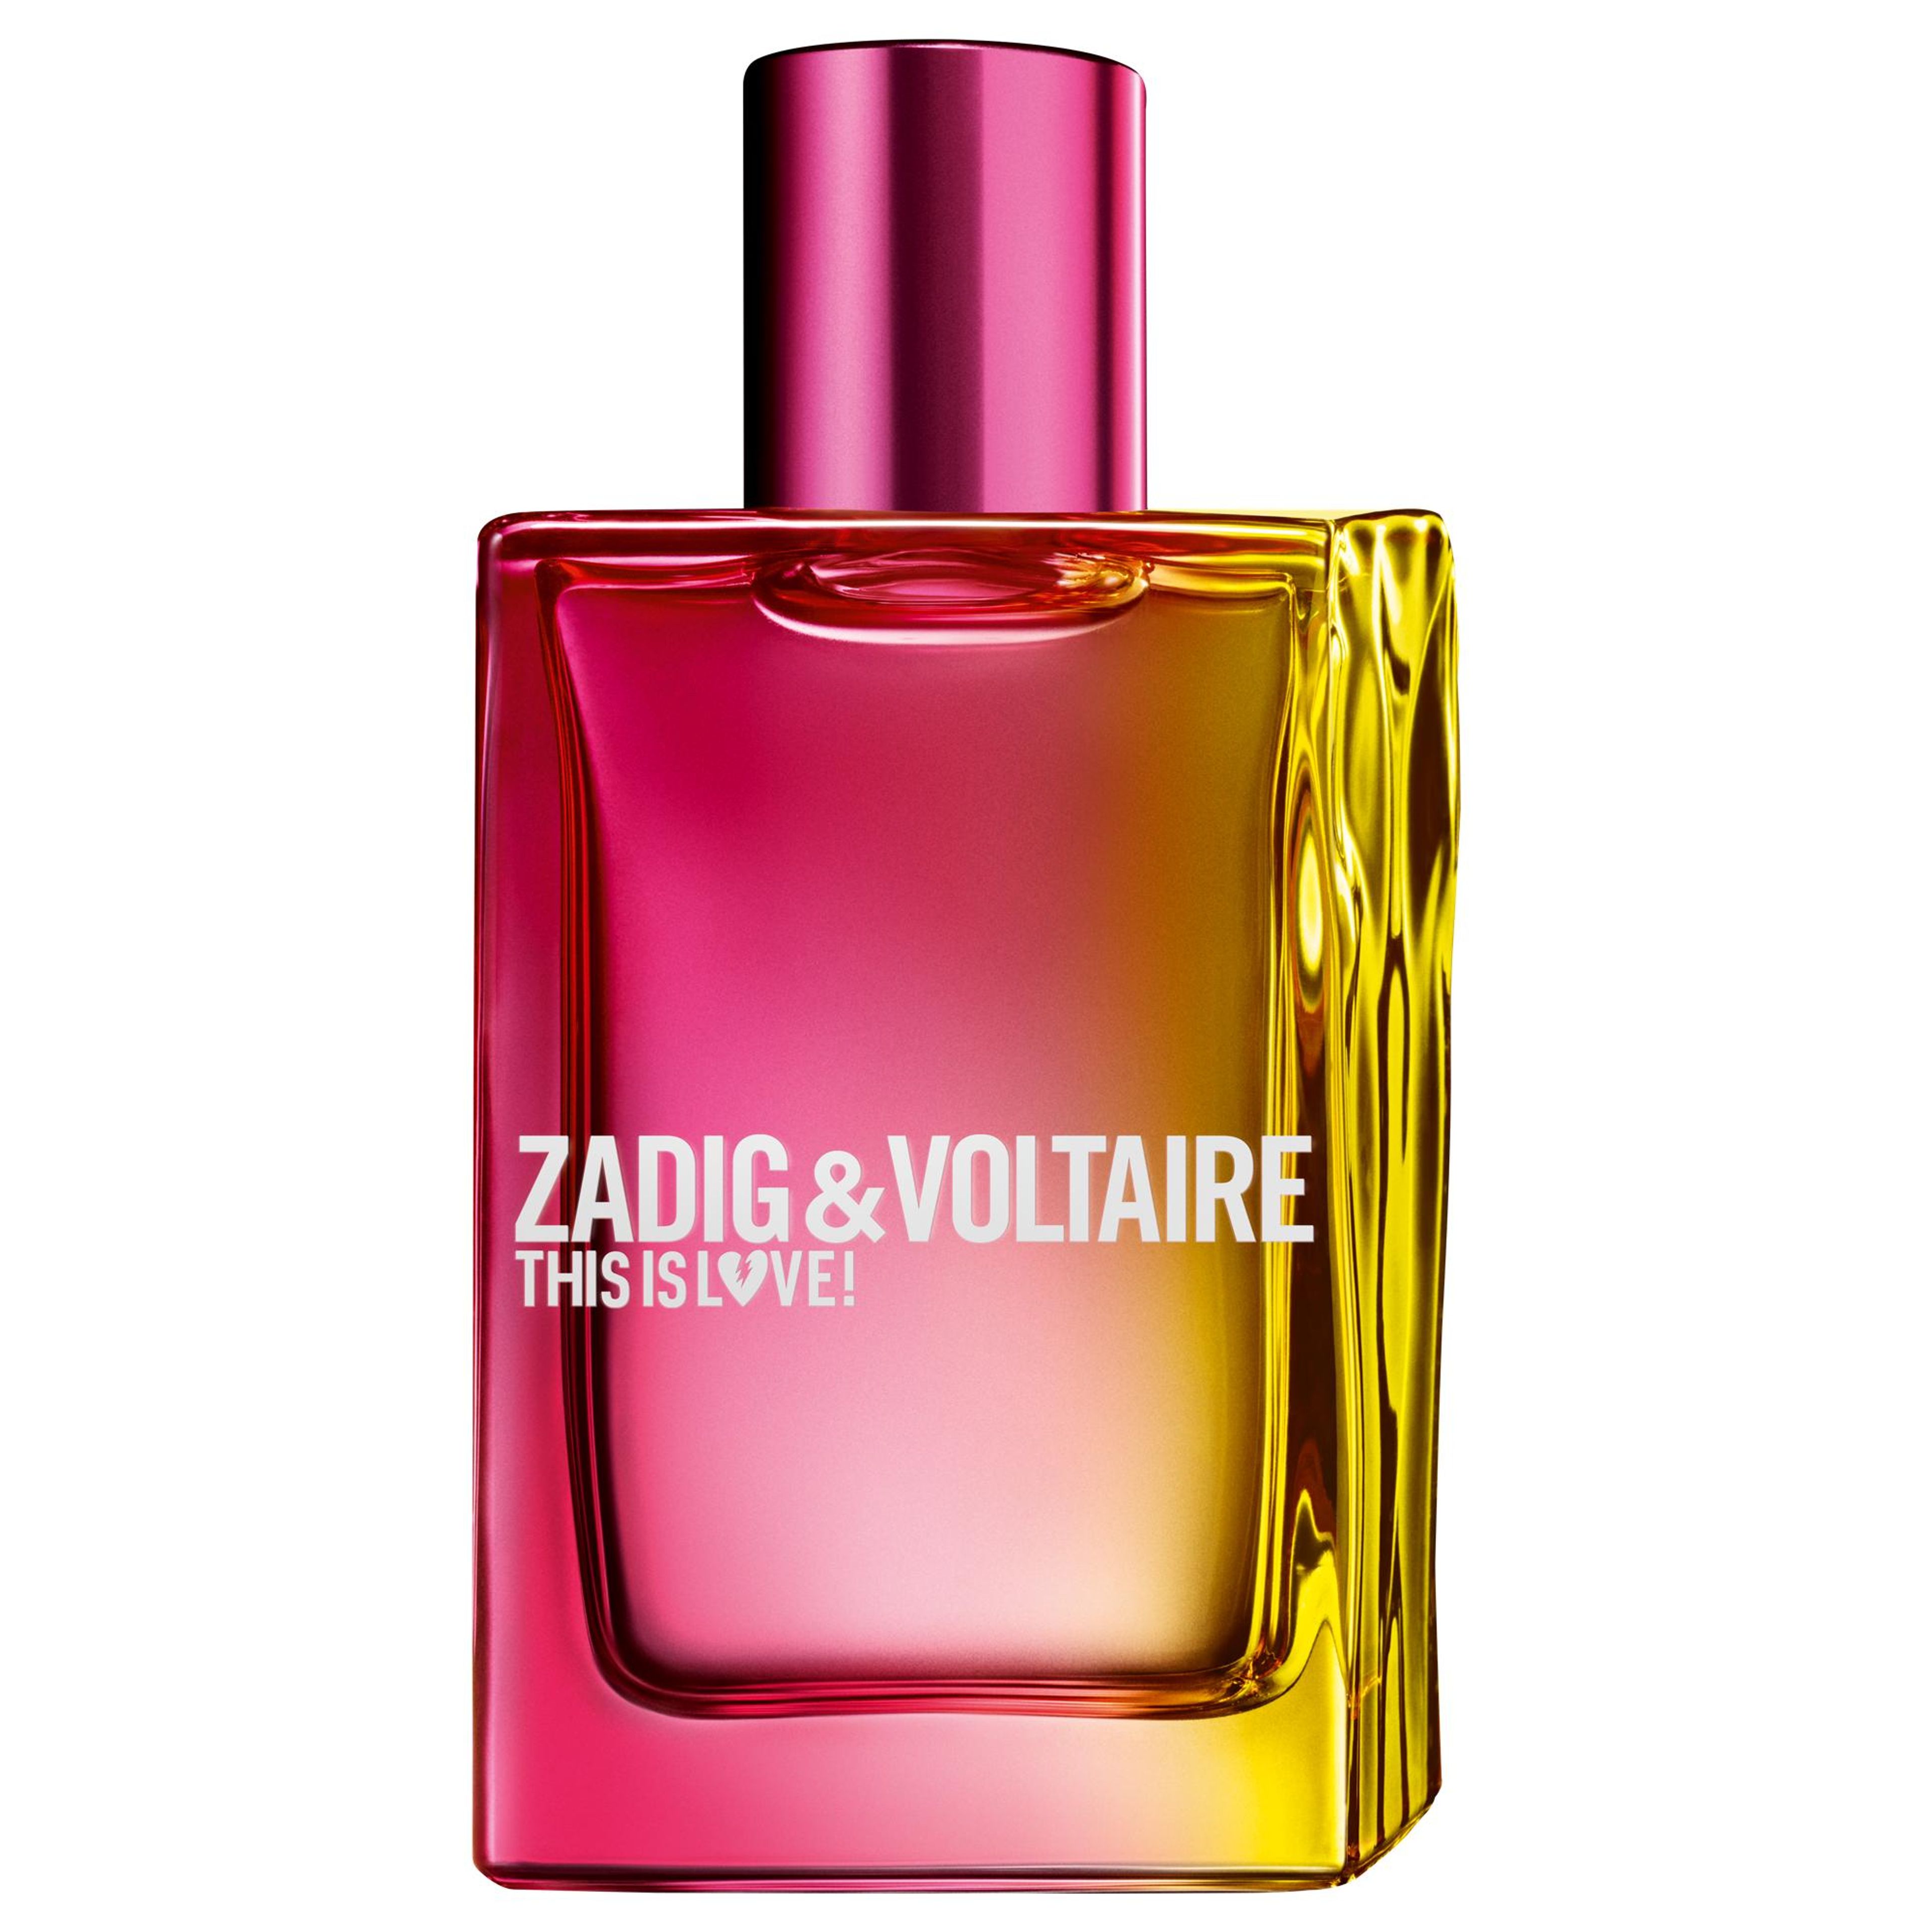 This Is Love! Pour Elle Eau De Parfum Zadig & Voltaire 1